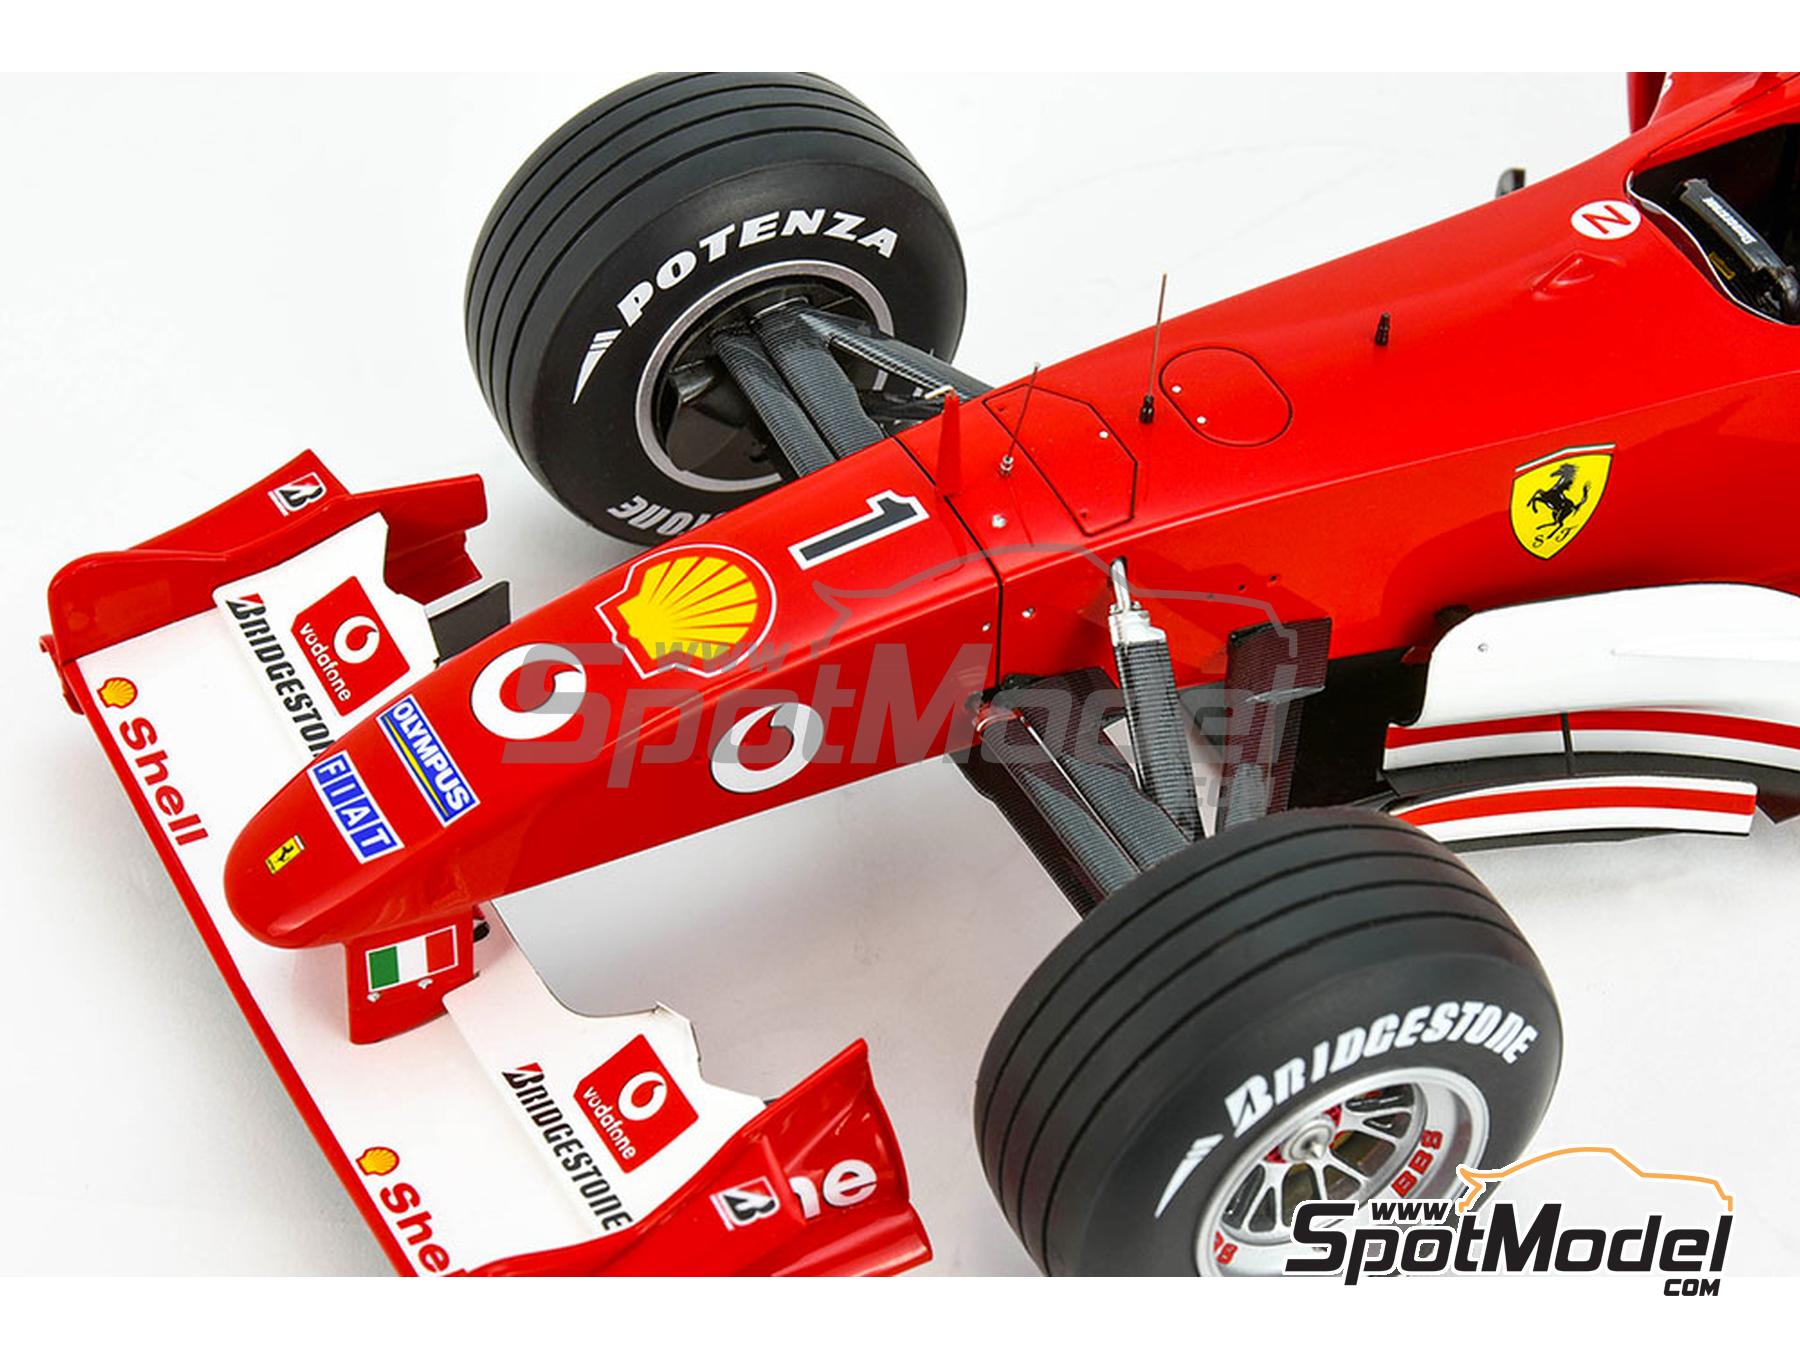 Ferrari F2003-GA Scuderia Ferrari Marlboro Team sponsored by Vodafone -  Italian Formula 1 Grand Prix 2003. Car scale model kit in 1/12 scale  manufactu